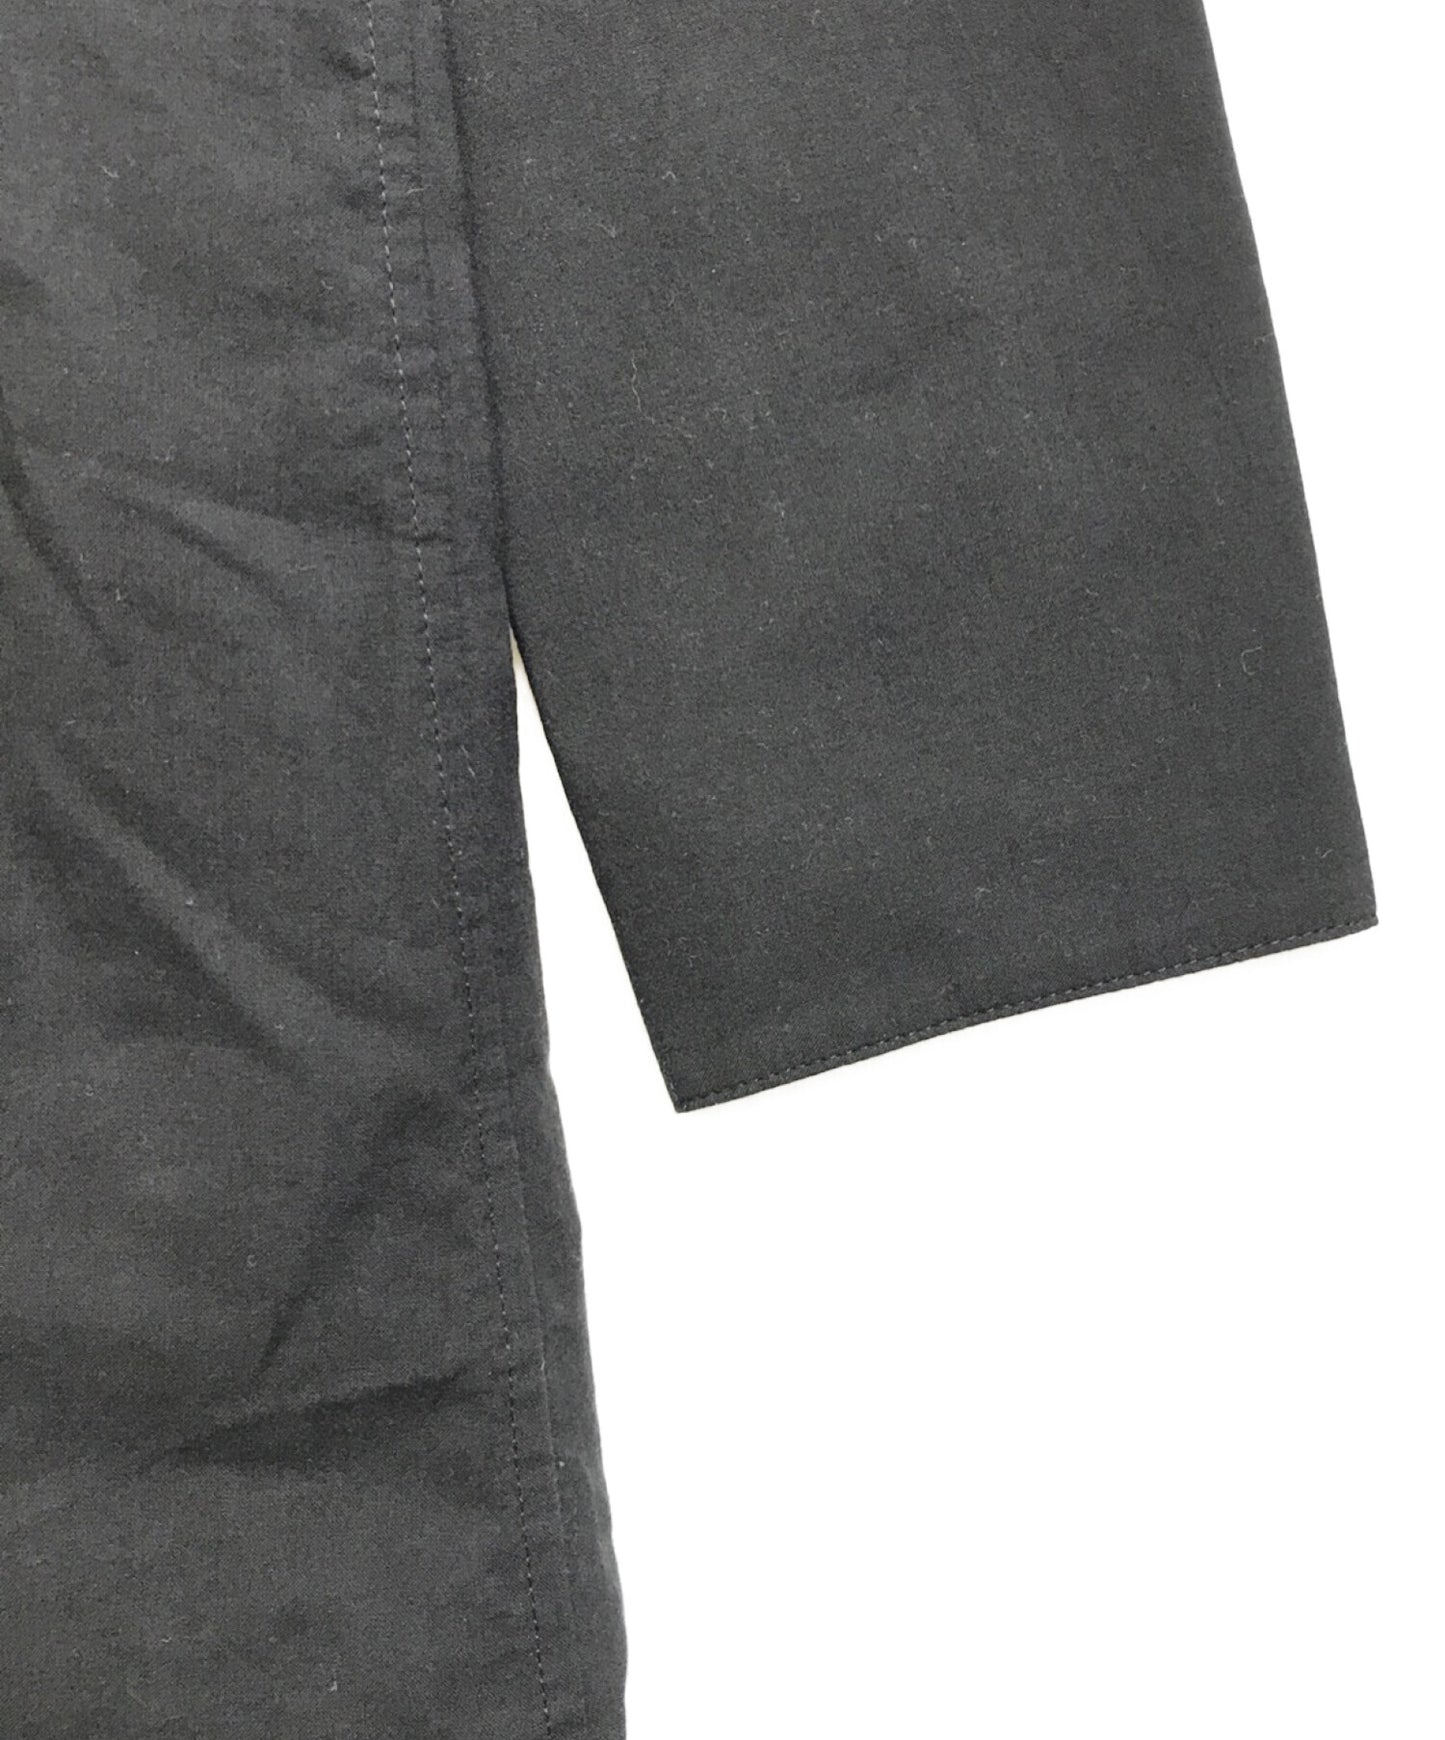 B Yohji Yamamoto 120/2 고독한, 고리가없는 커프 셔츠